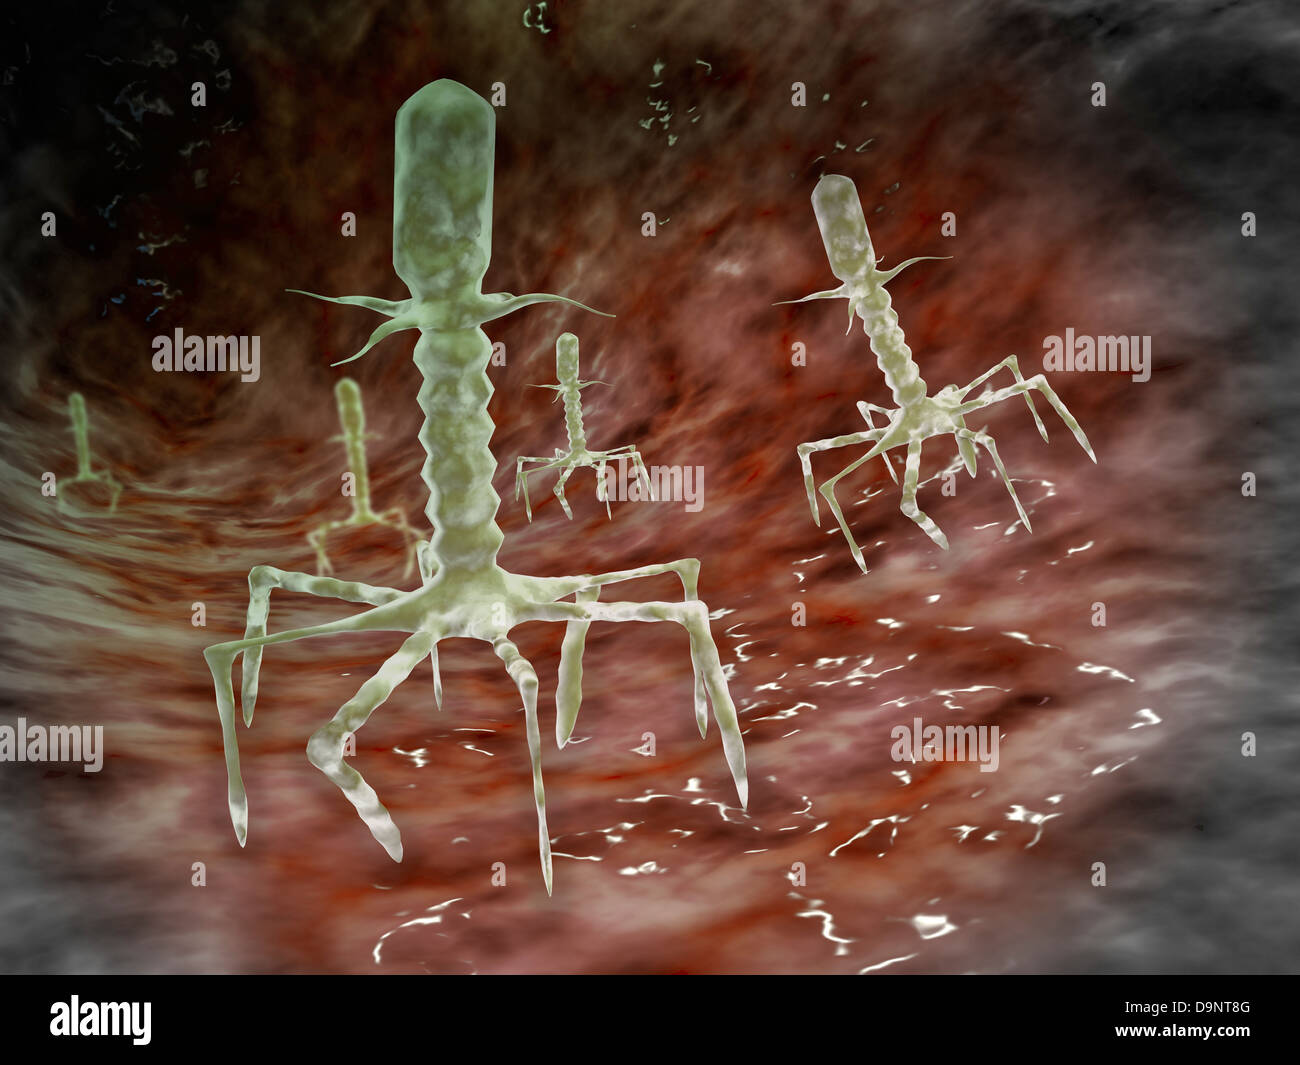 Mikroskopische Ansicht von Bakteriophagen auf der Oberfläche der Bakterien. Stockfoto